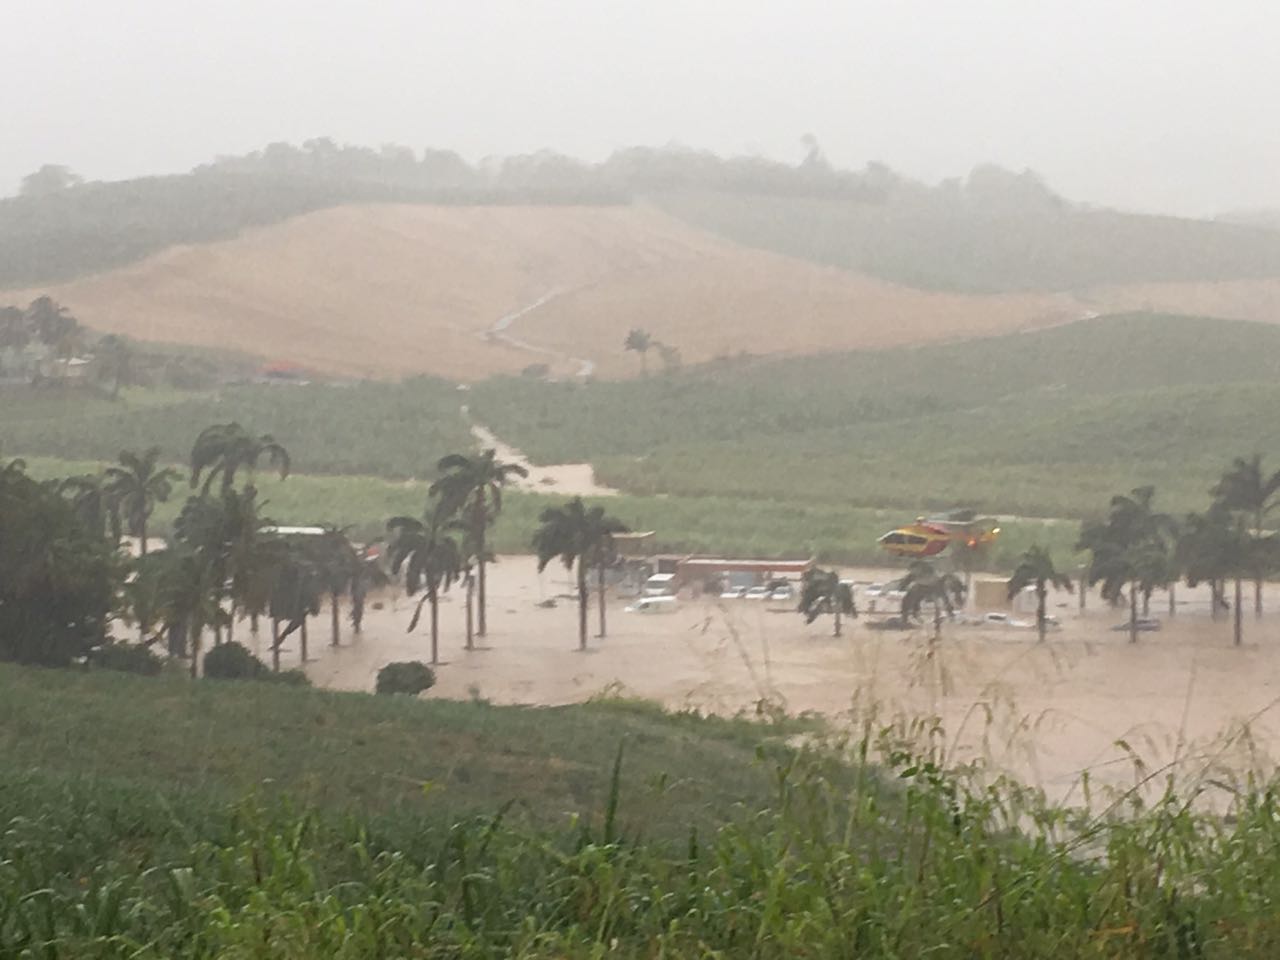     Ducos : l'état de catastrophe naturelle reconnu pour les pluies du 16 avril 2018 

